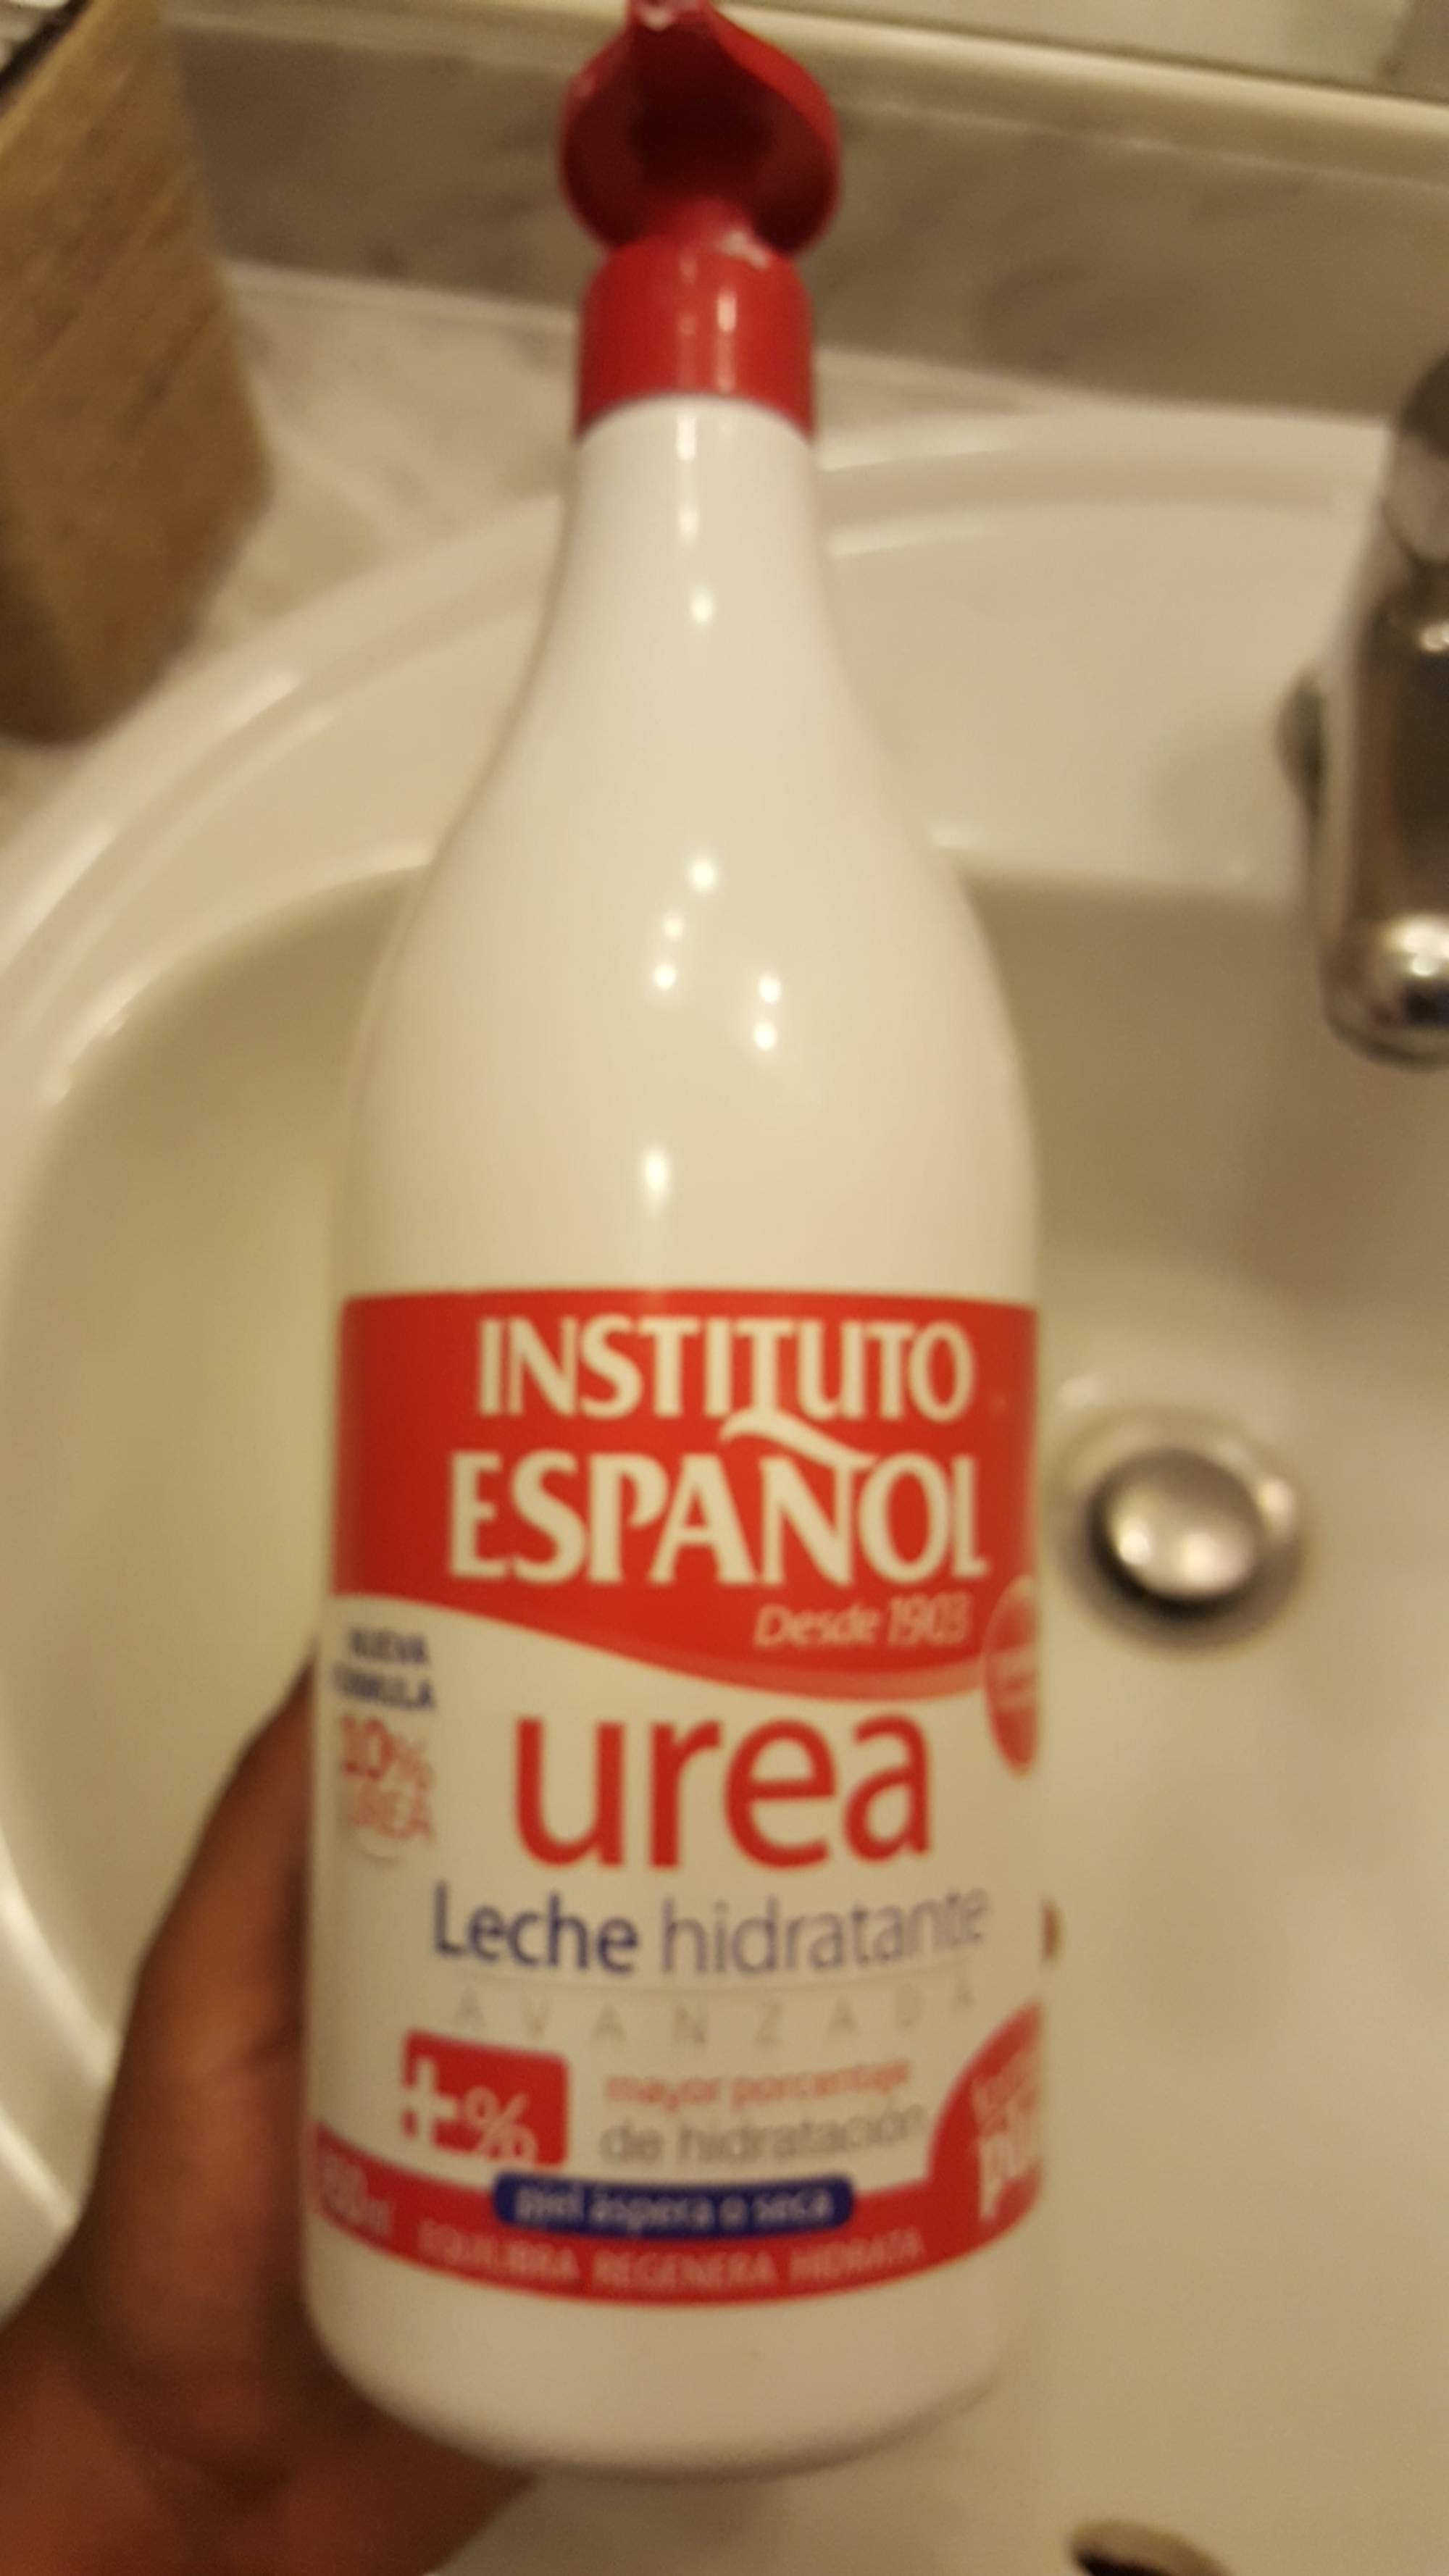 INSTITUTO ESPANOL - Urea Leche hidratante